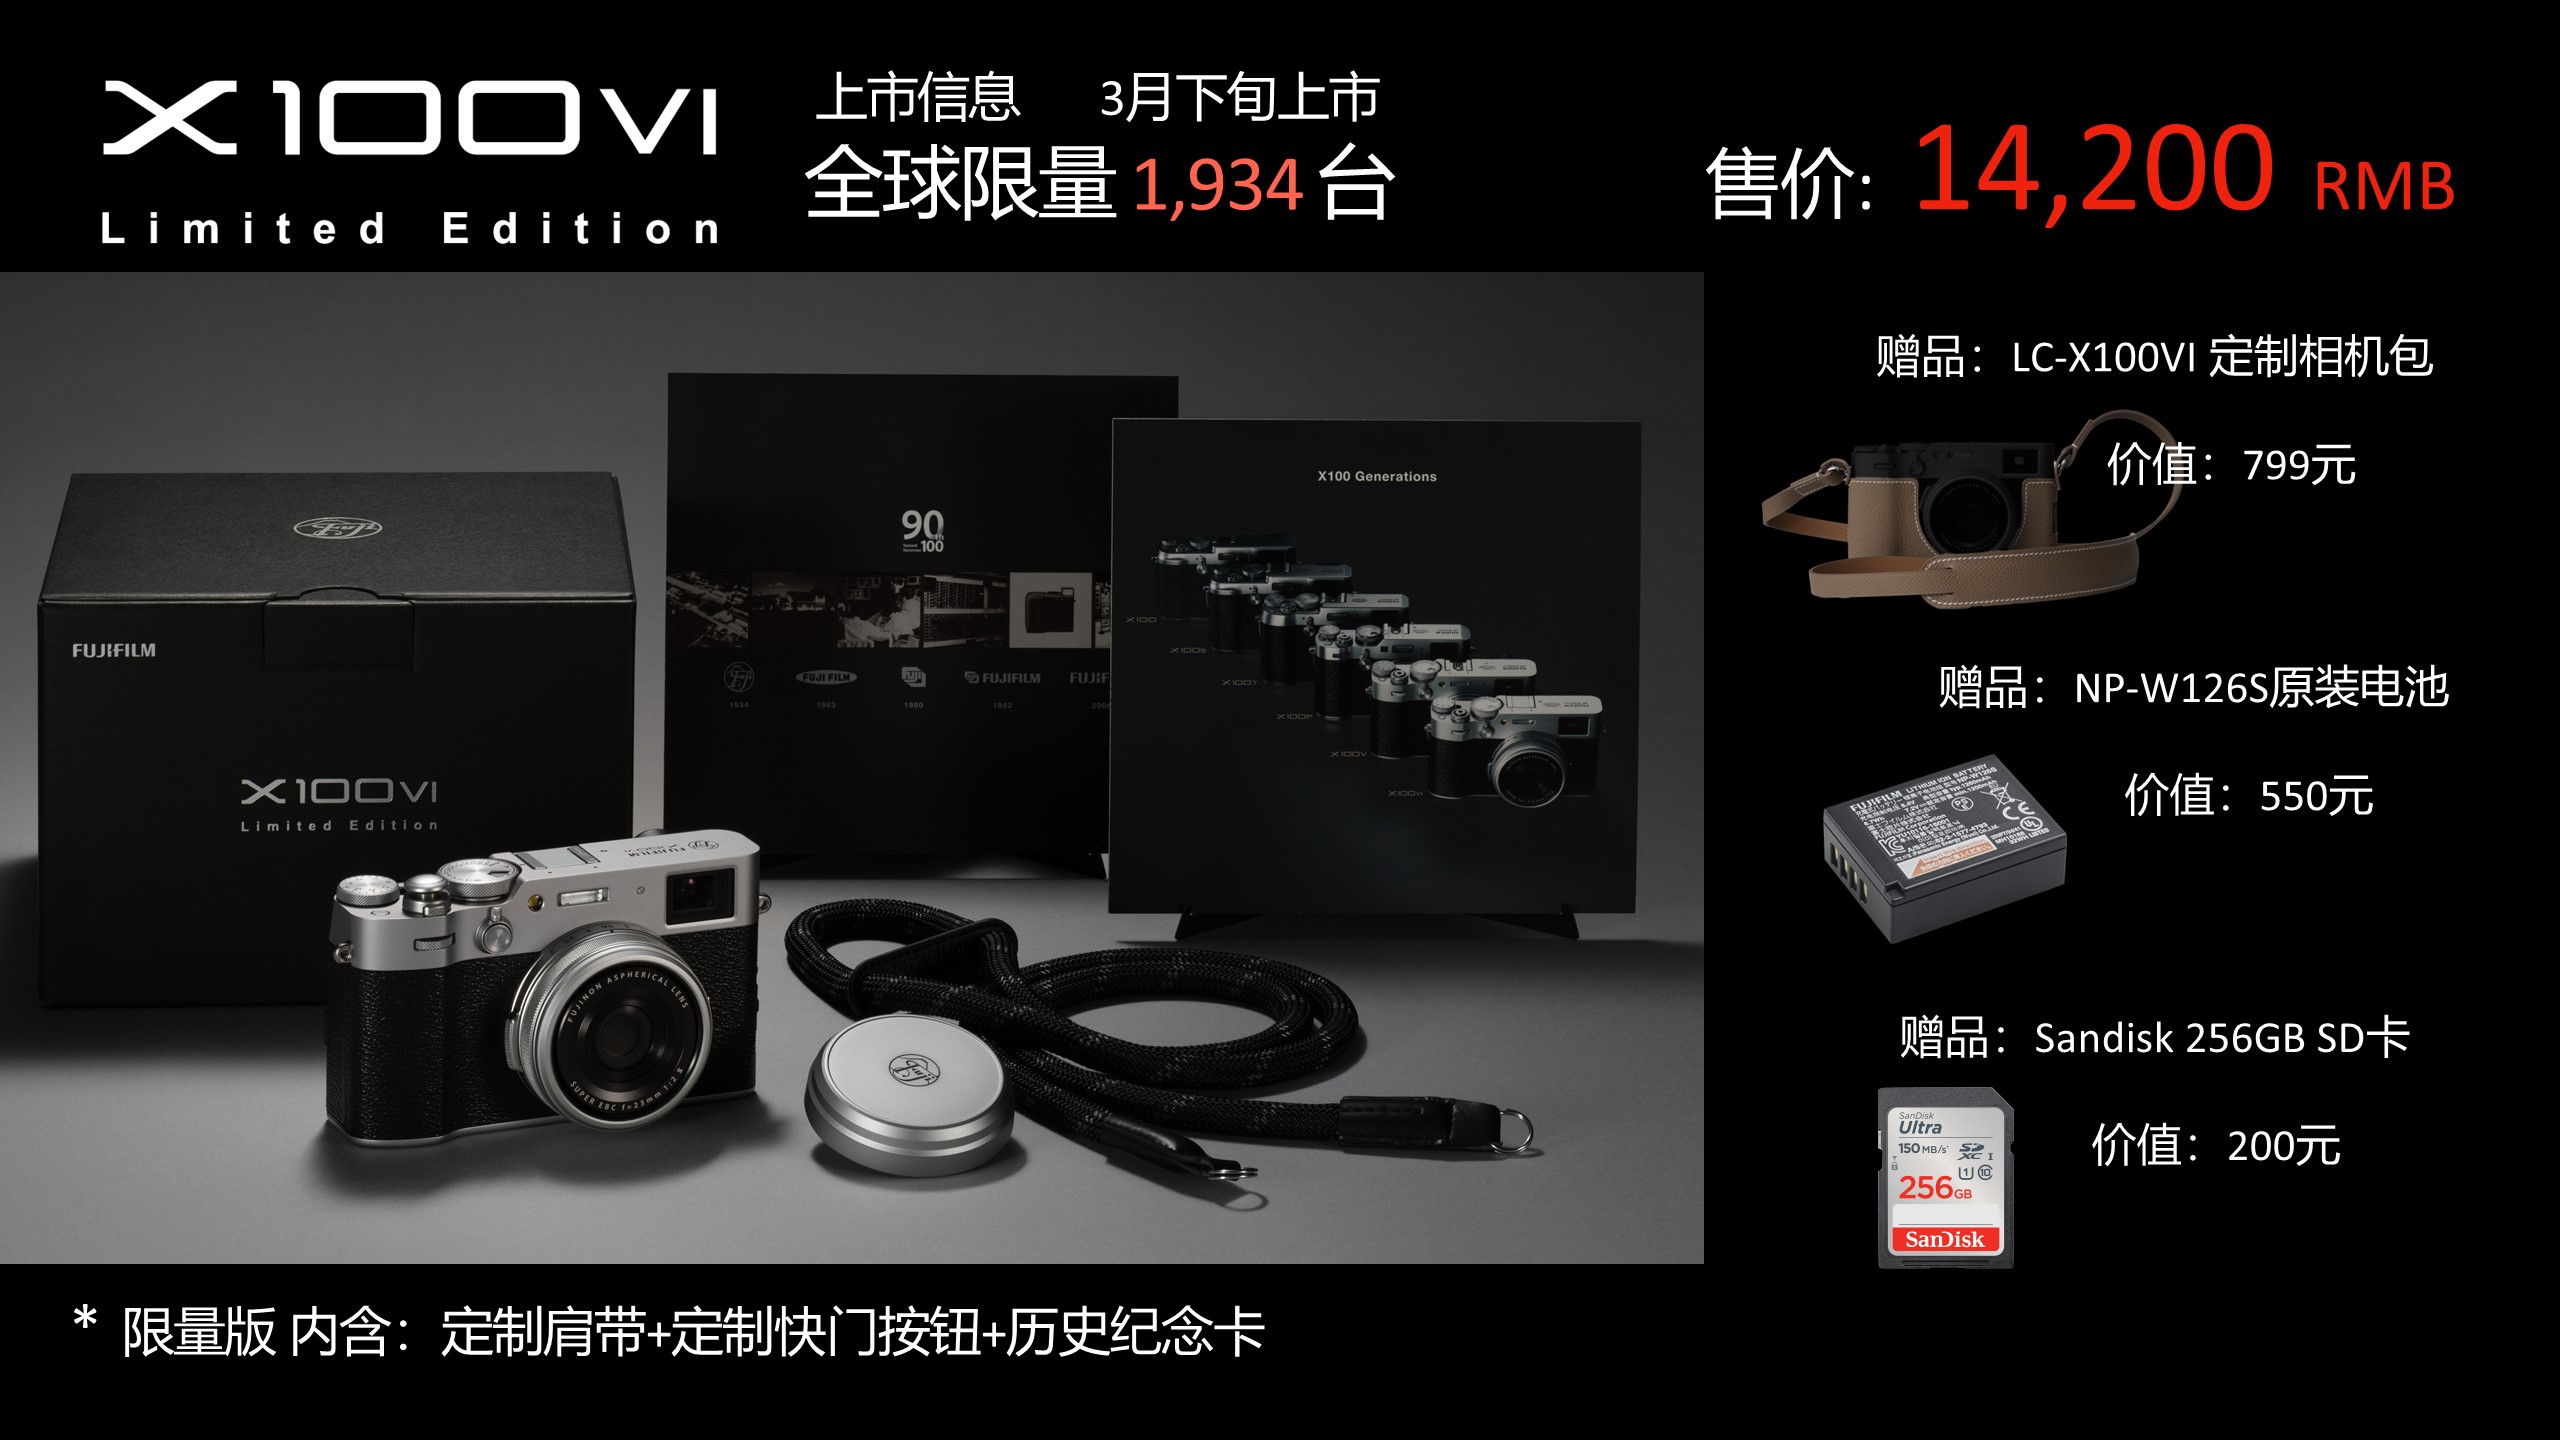 富士胶片FUJIFILM X100VI 90周年限量版数码相机上市| 富士胶片[中国]